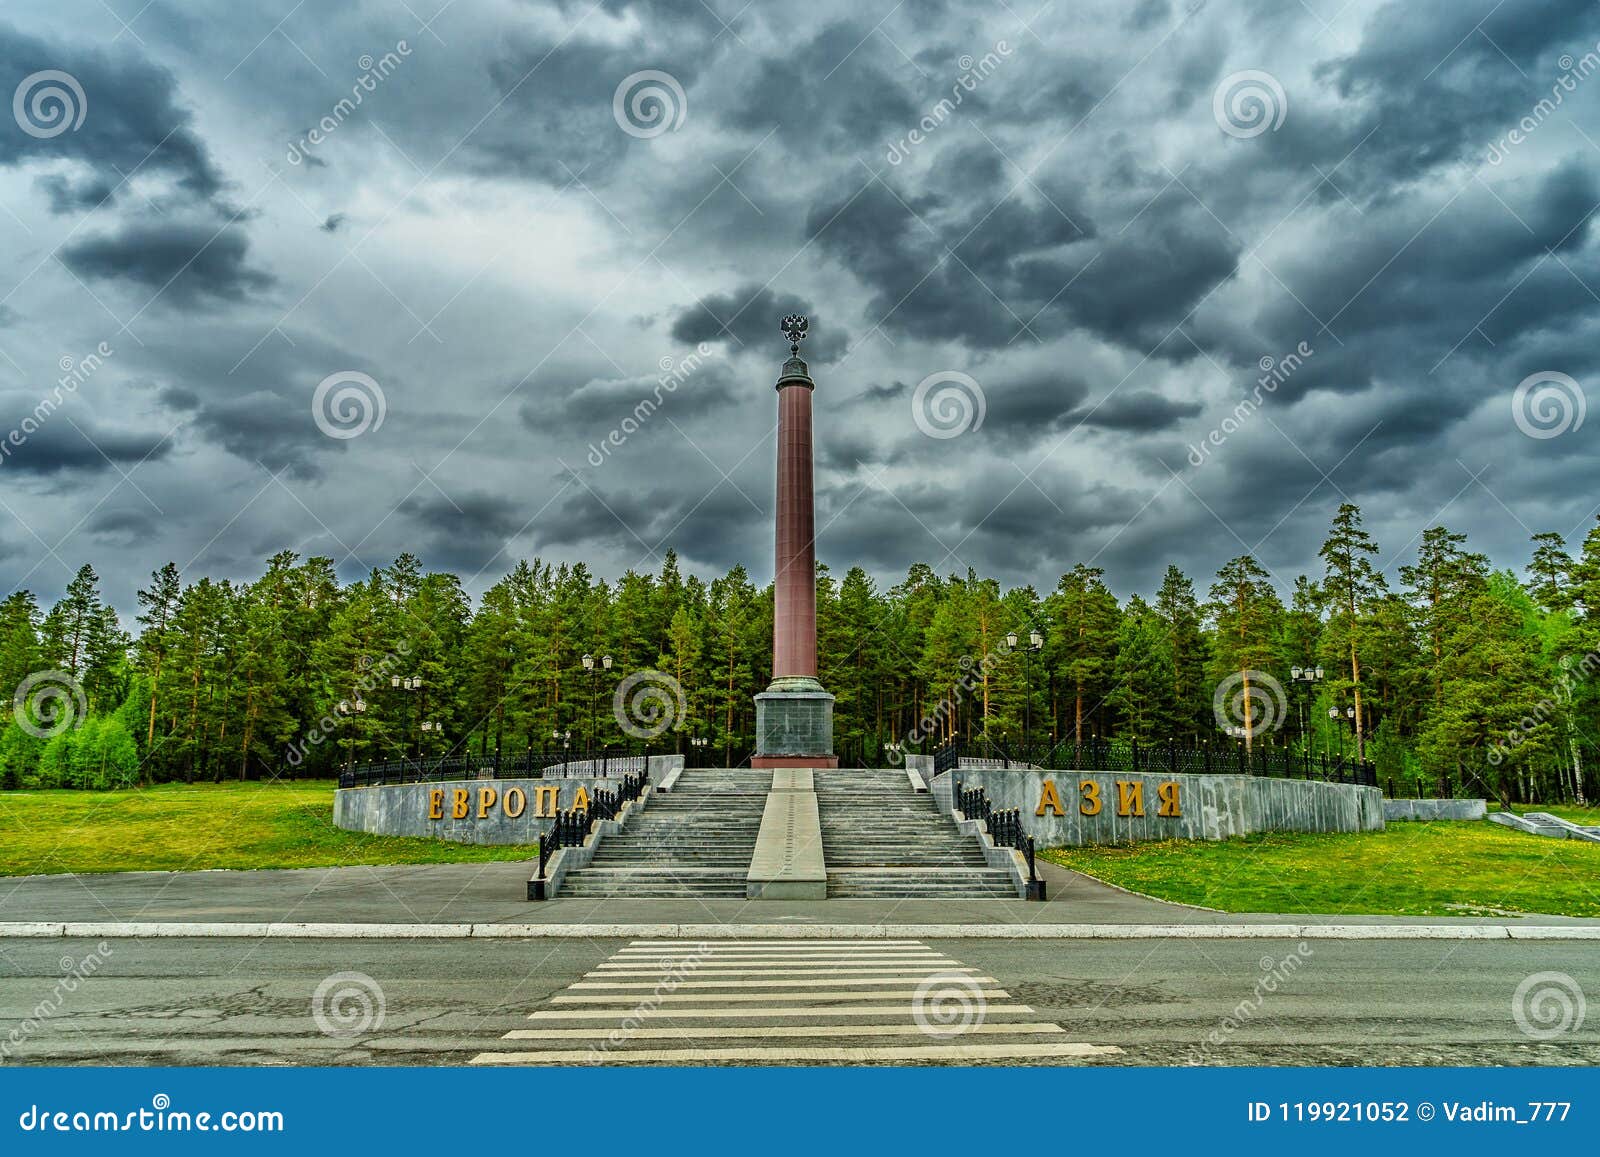 obelisco-en-la-frontera-entre-europa-y-asia-rusia-2018-fotograf-a